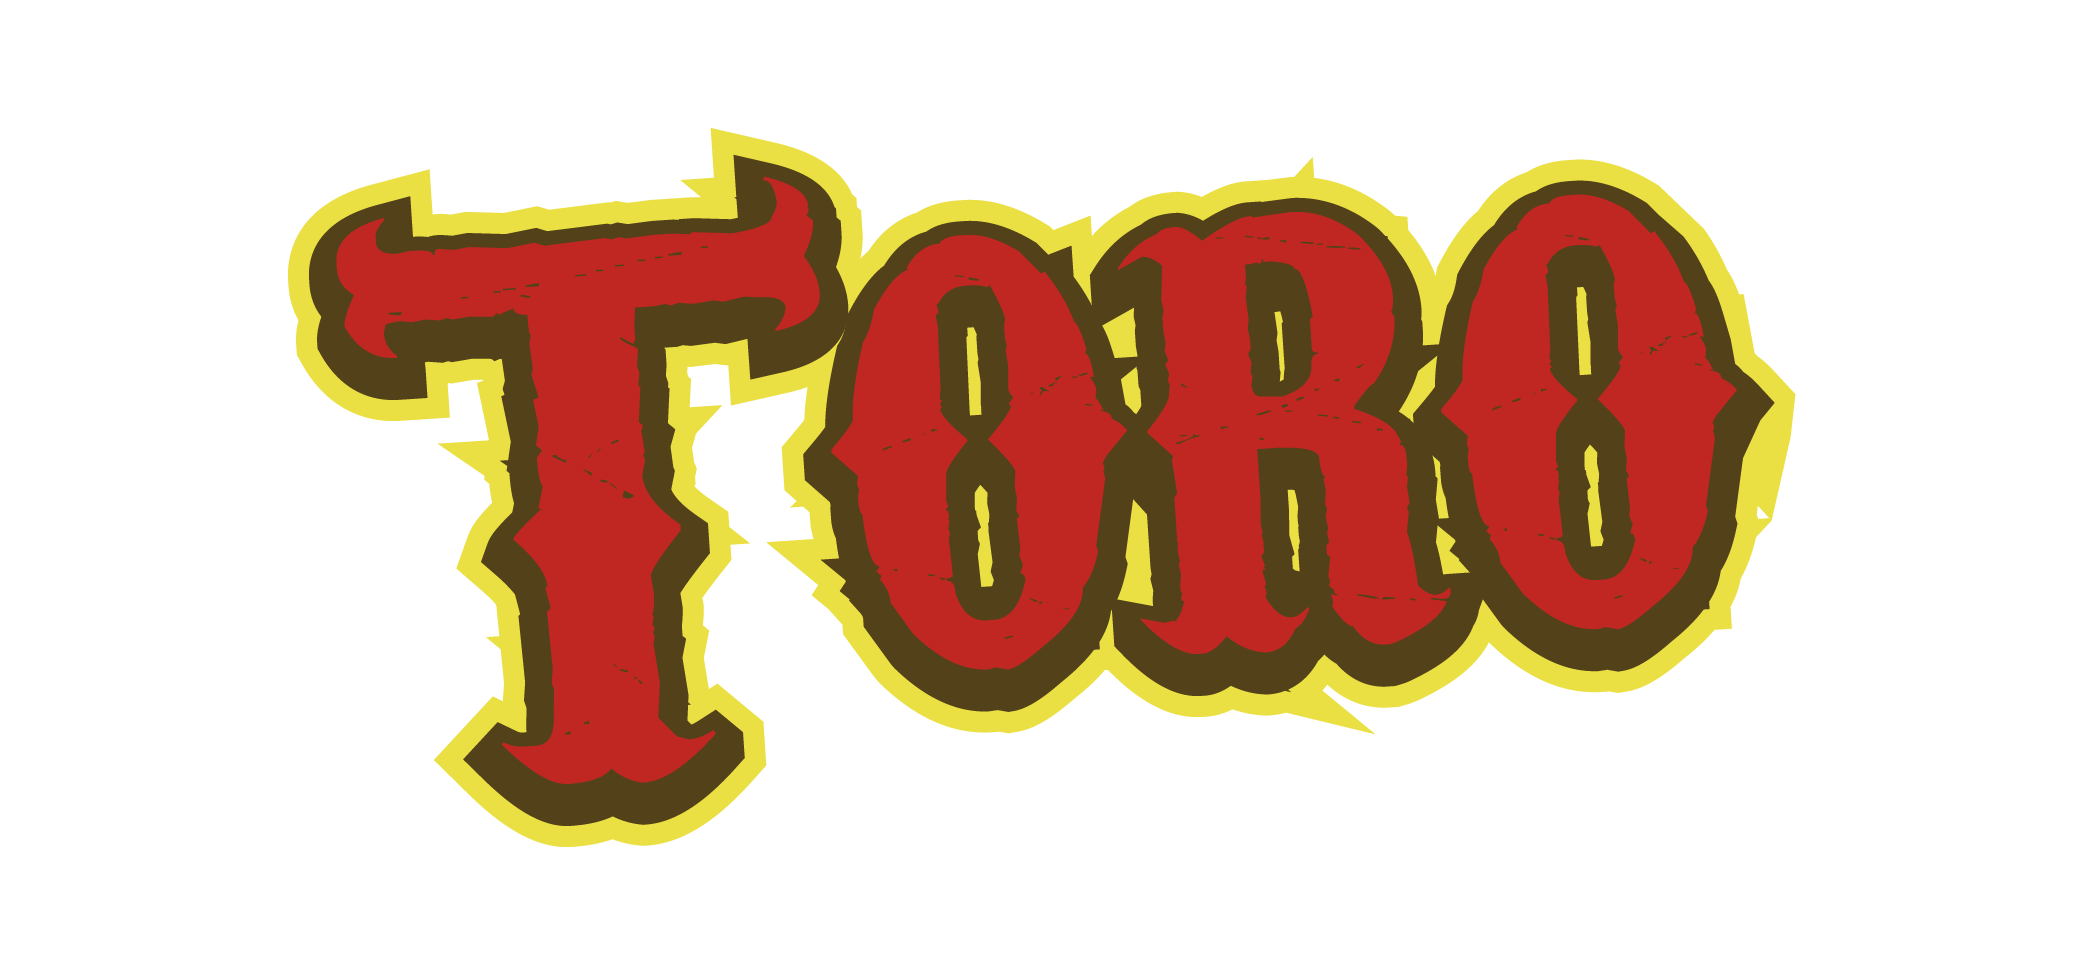 Toro nuevo logo 01